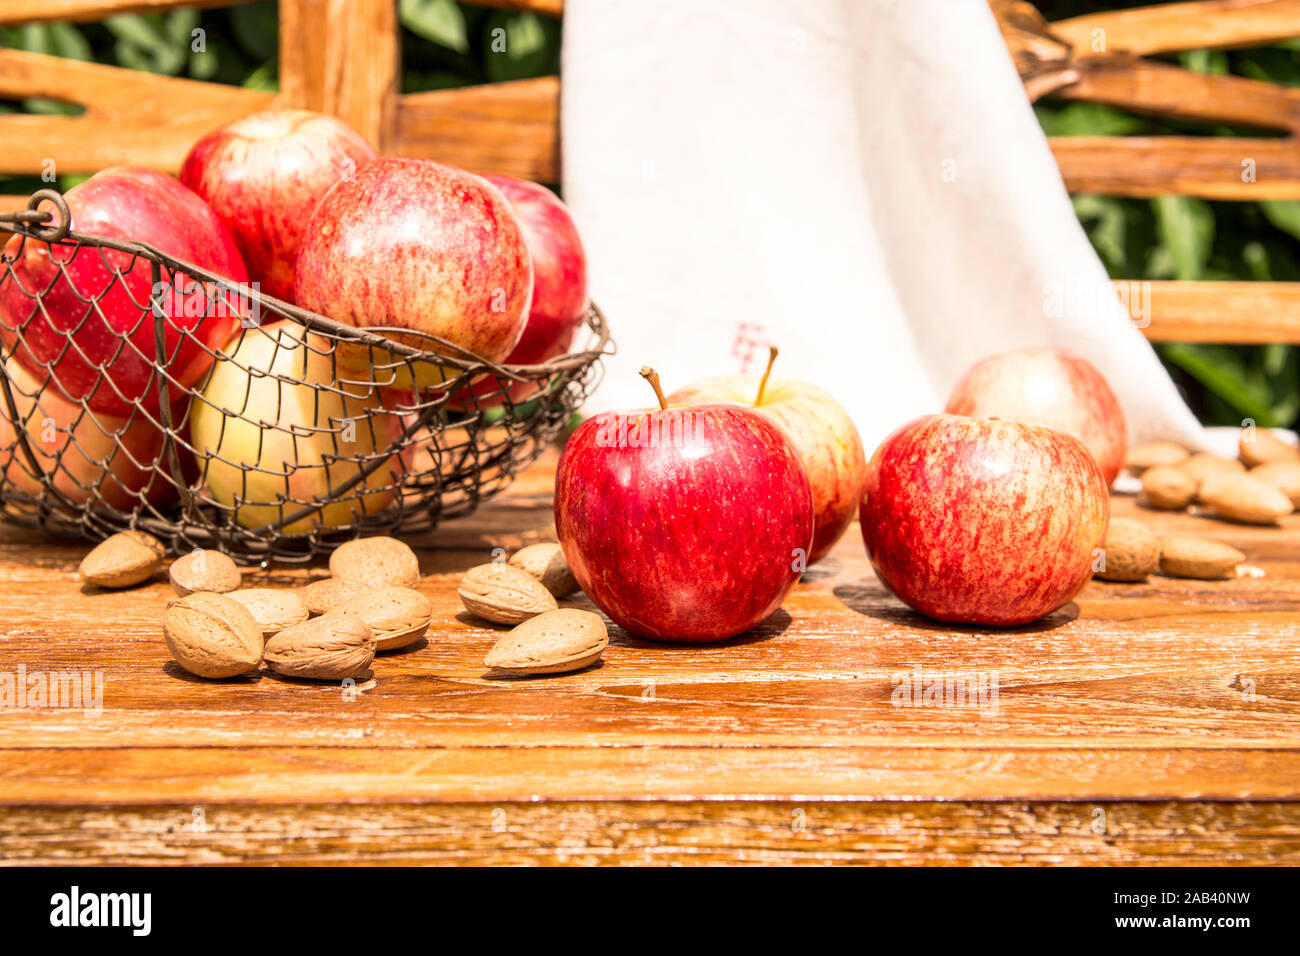 Äpfel und Mandeln liegen zusammen auf einer Holzbank im Garten |Apples and almonds lying together on a wooden bench in the garden| Stock Photo